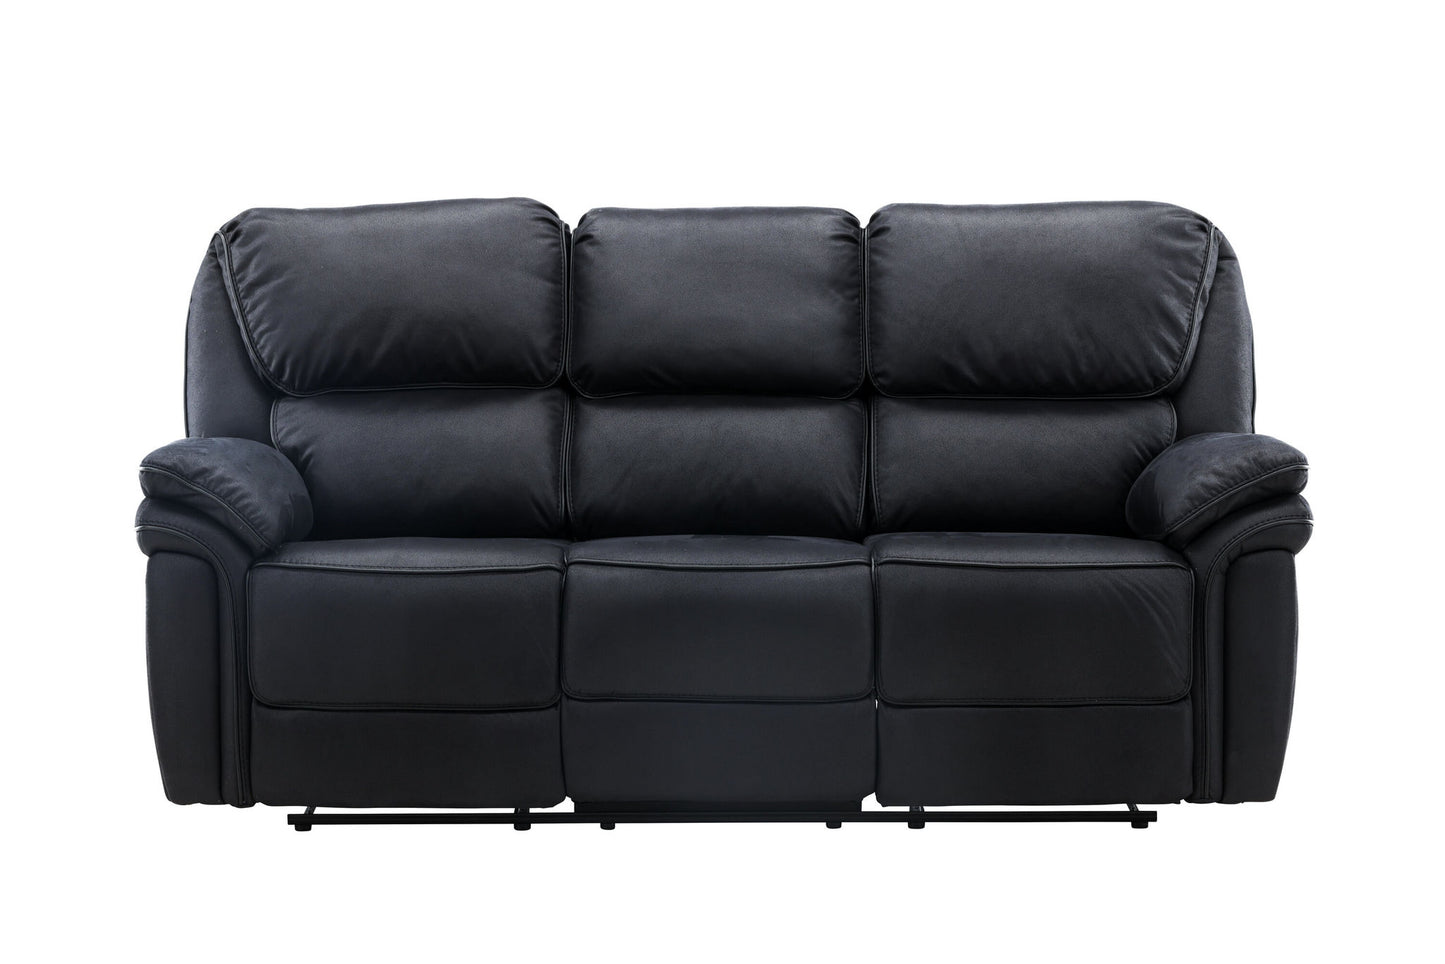 Saroga Recliner Sofa - Sort Microfiber